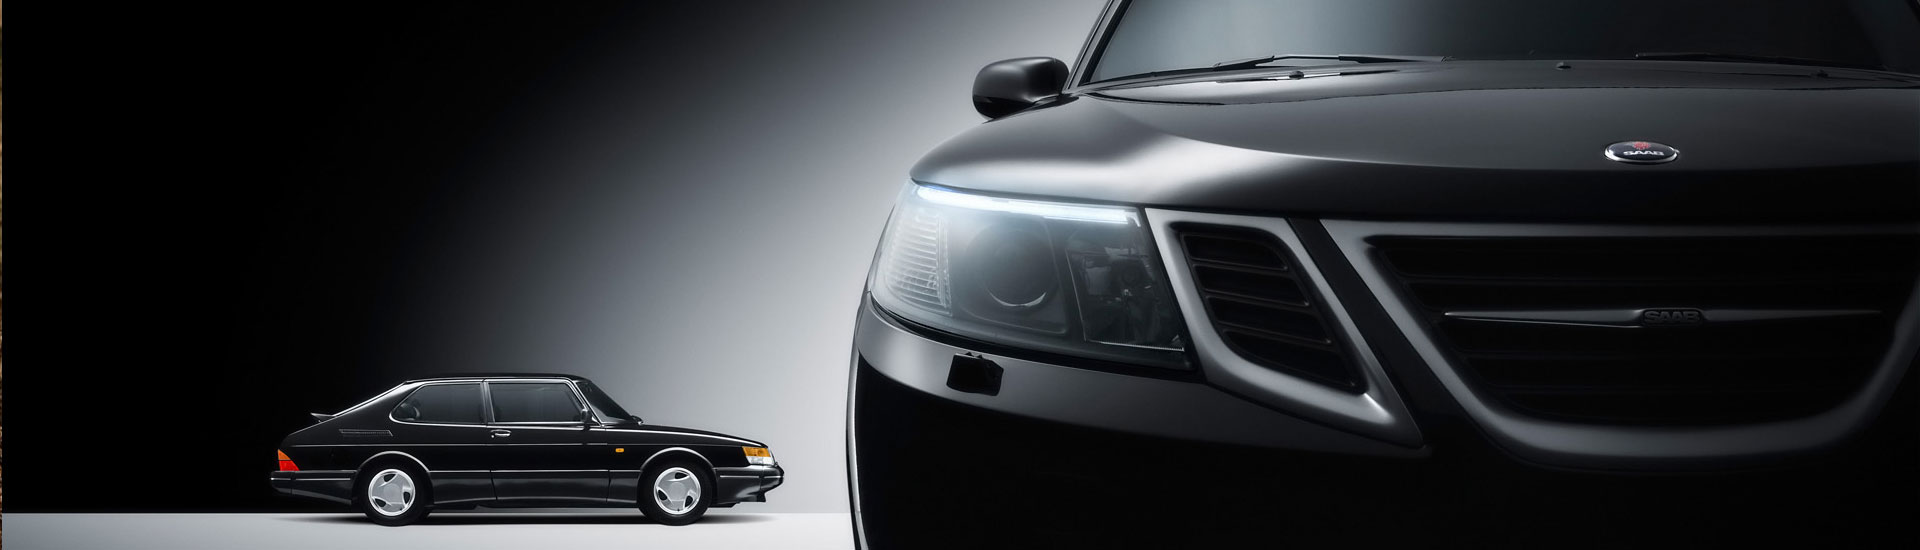 Saab Headlight Tint Covers